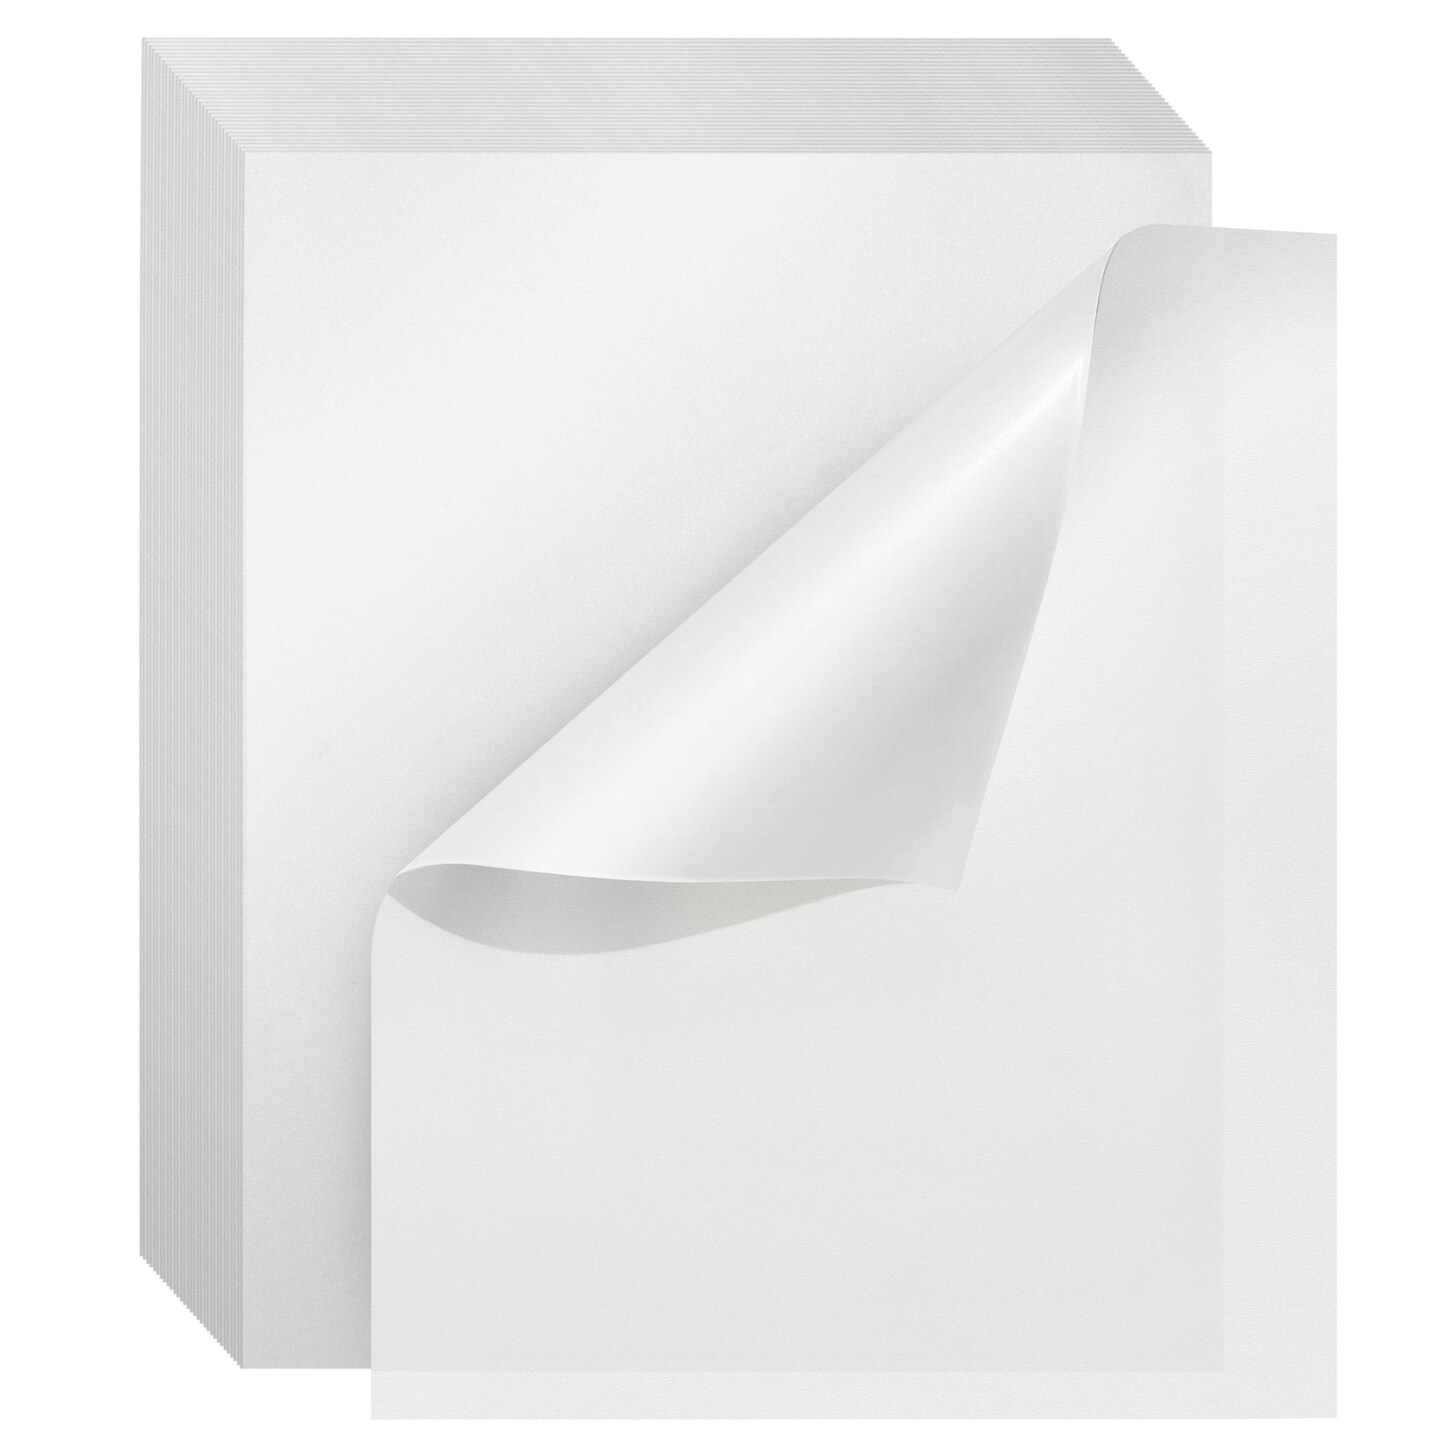  Glassine Paper Sheets - 100 Pack Glassine Paper for